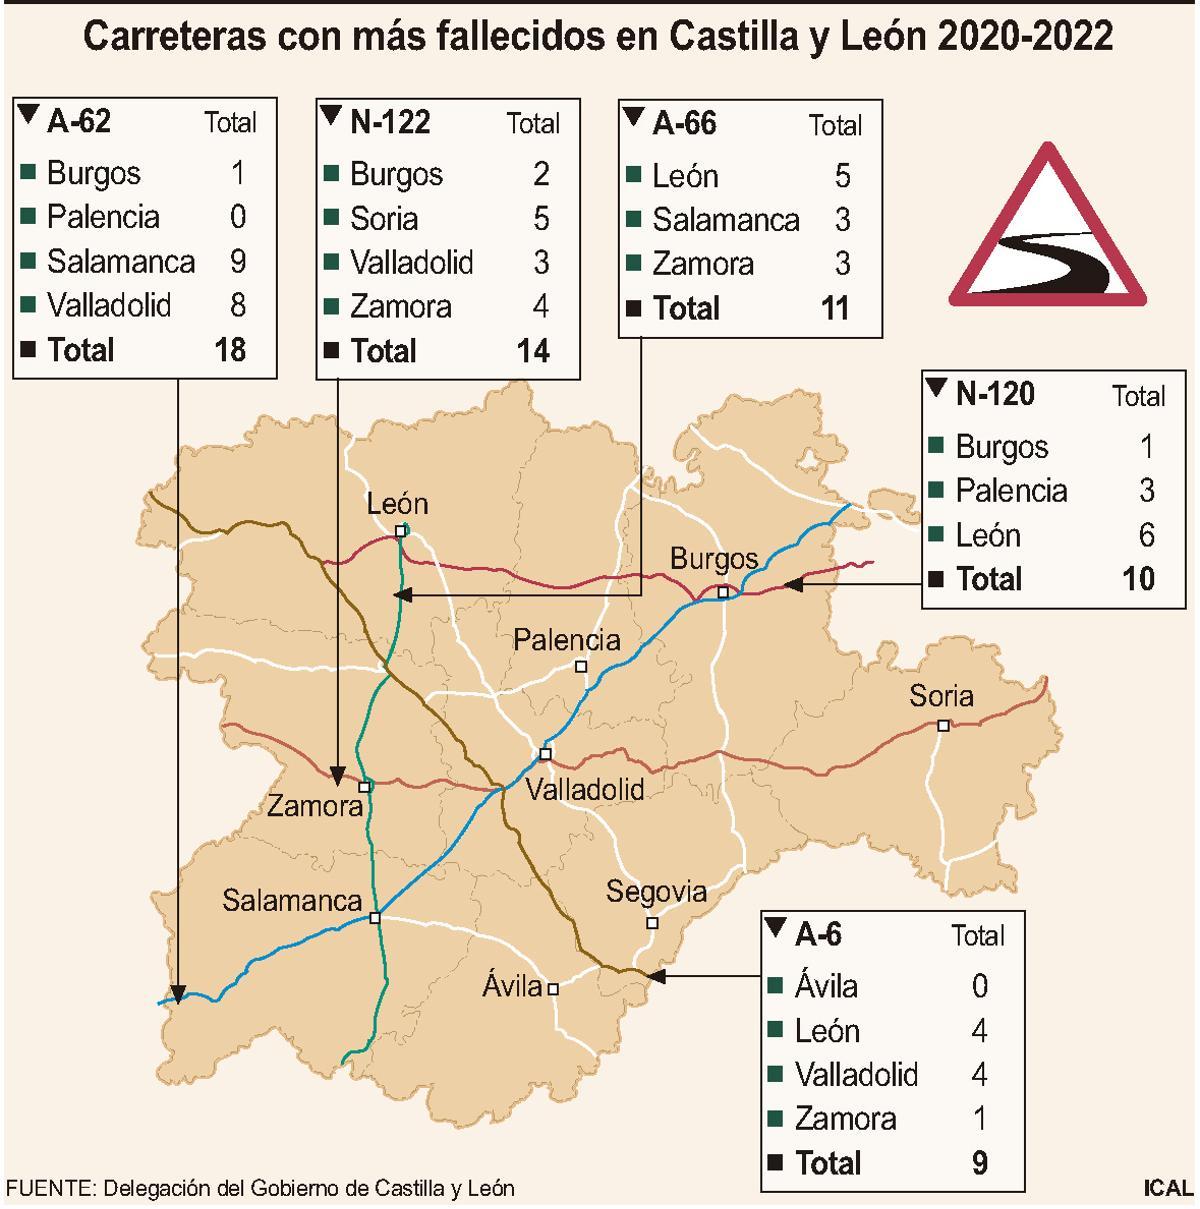 Carreteras con más fallecidos en Castilla y León 2020-2022